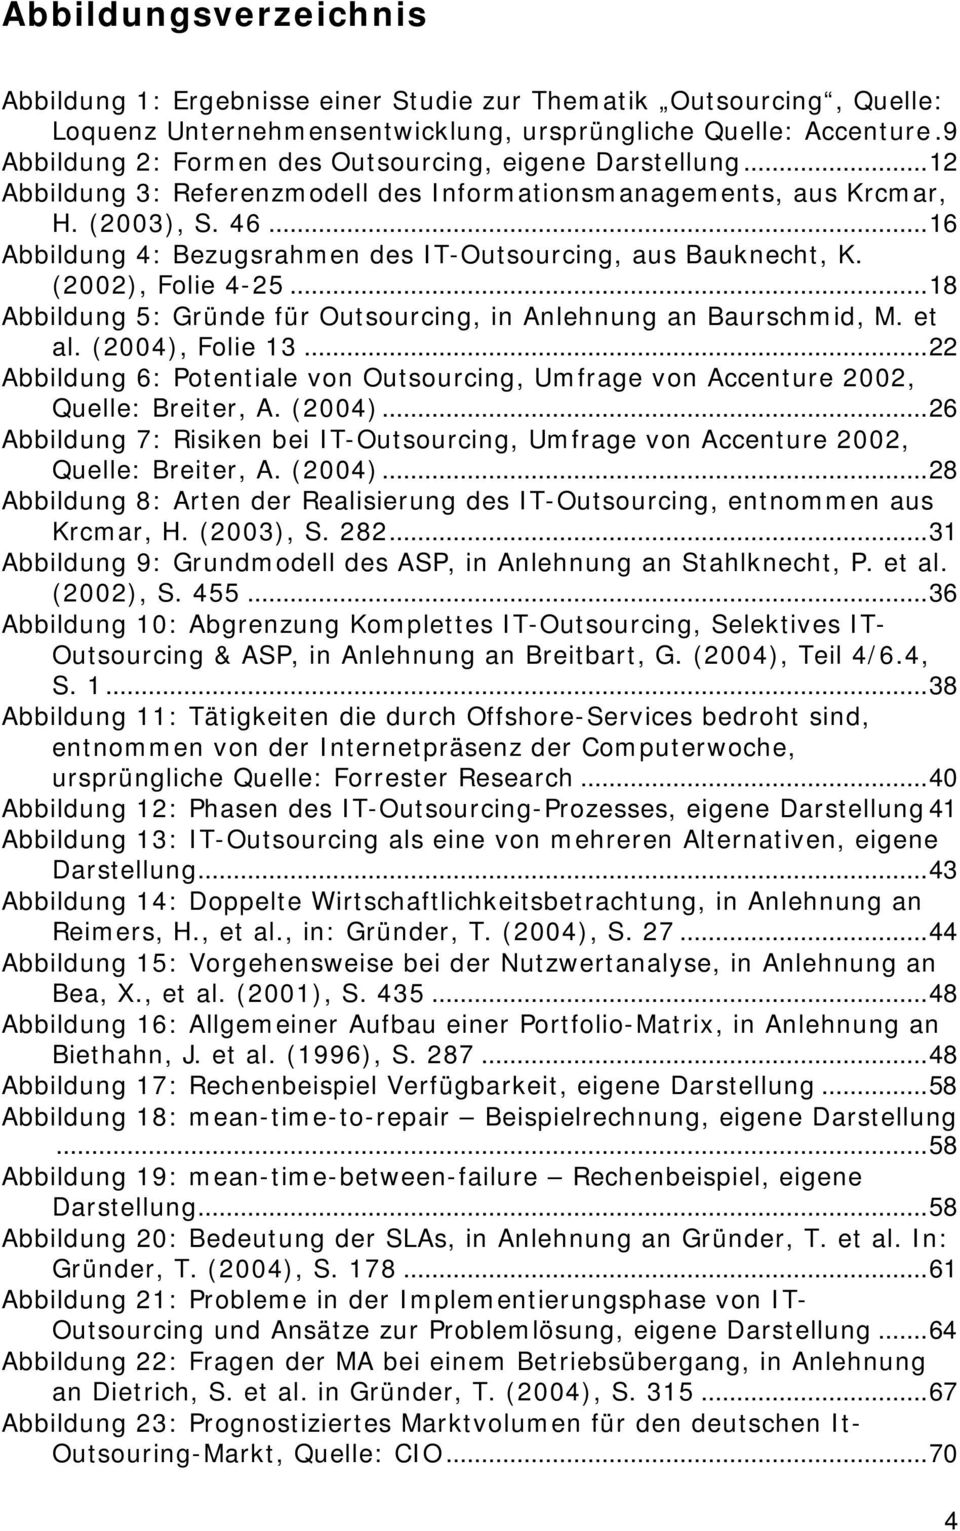 ..16 Abbildung 4: Bezugsrahmen des IT-Outsourcing, aus Bauknecht, K. (2002), Folie 4-25...18 Abbildung 5: Gründe für Outsourcing, in Anlehnung an Baurschmid, M. et al. (2004), Folie 13.